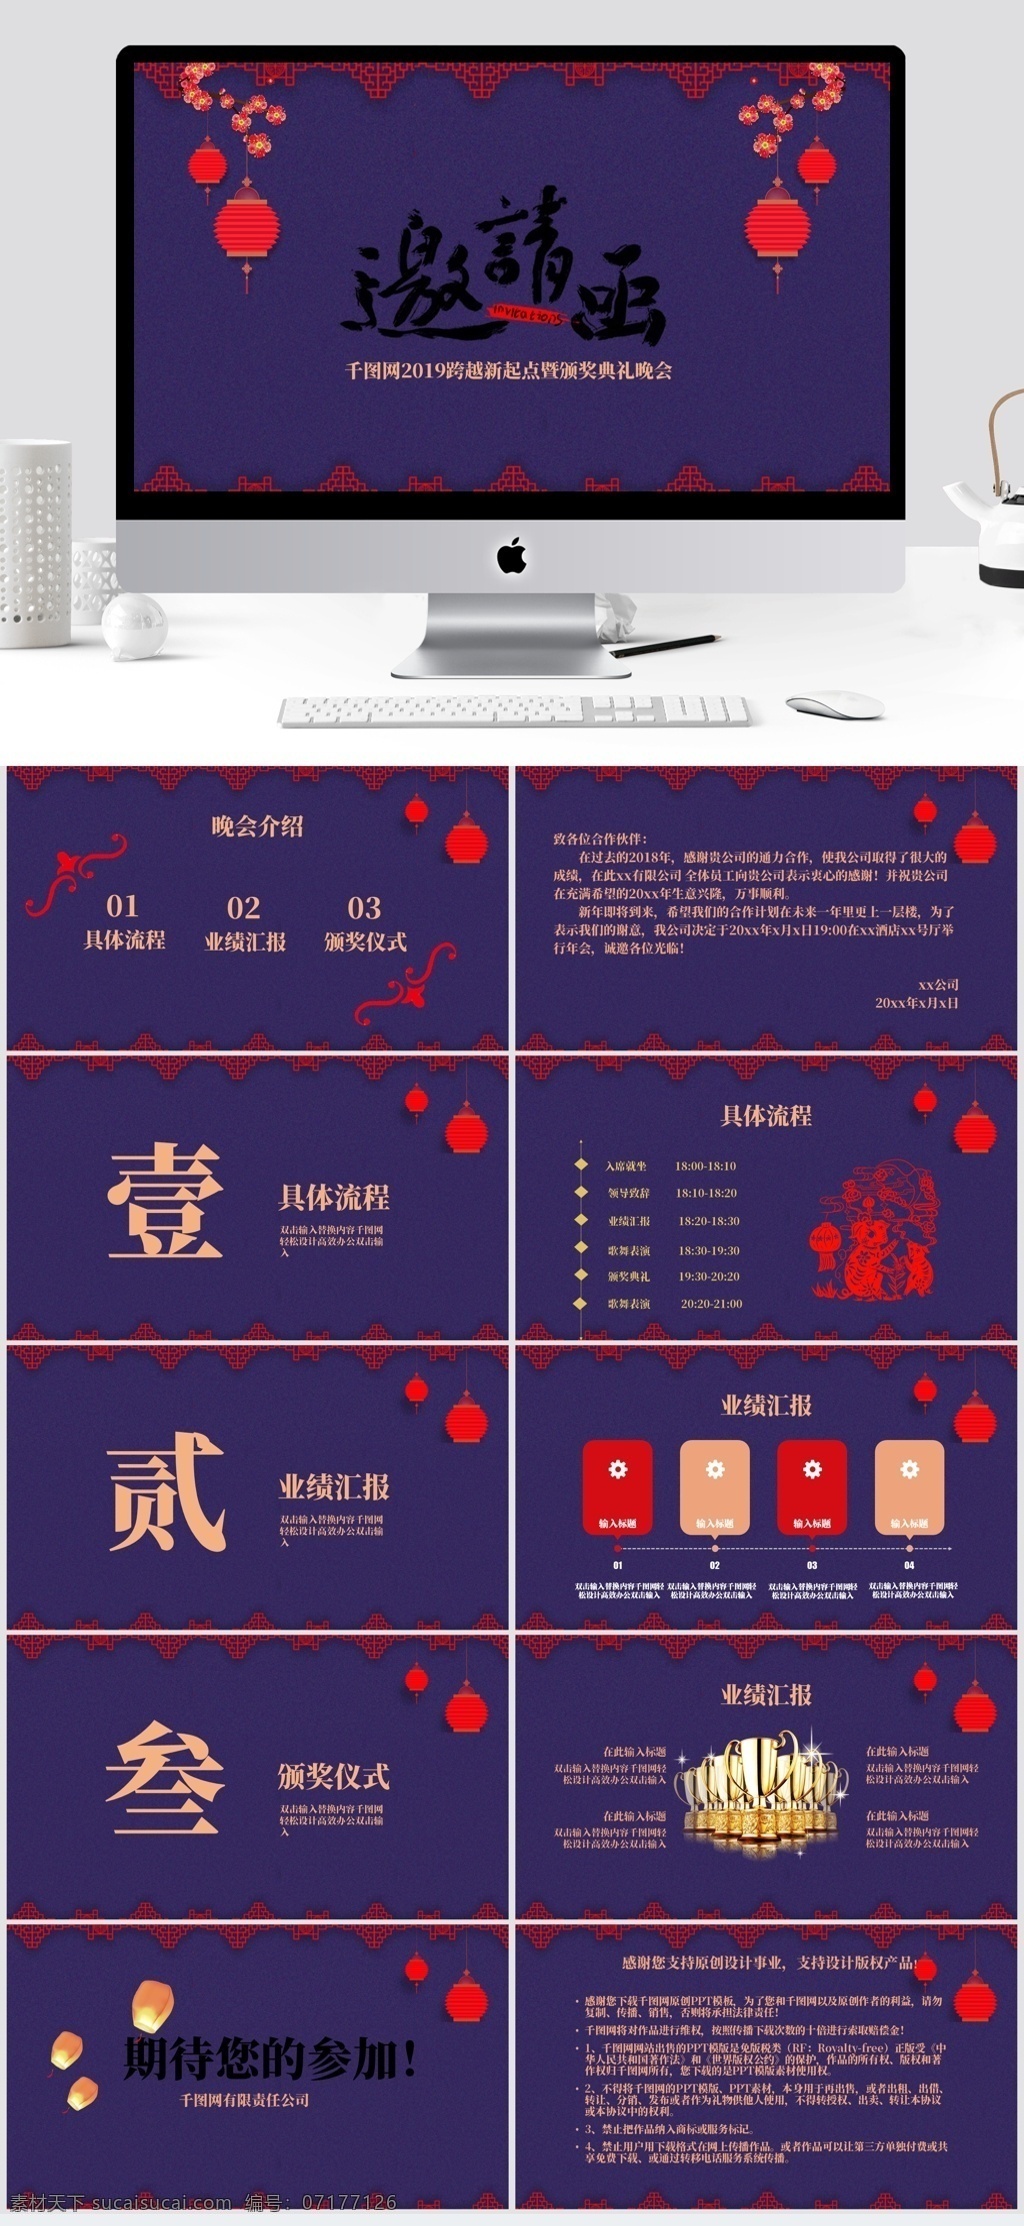 古典 系列 中国 剪纸 企业 年会 邀请函 中国风 晚会 紫色主色调 猪系列剪纸